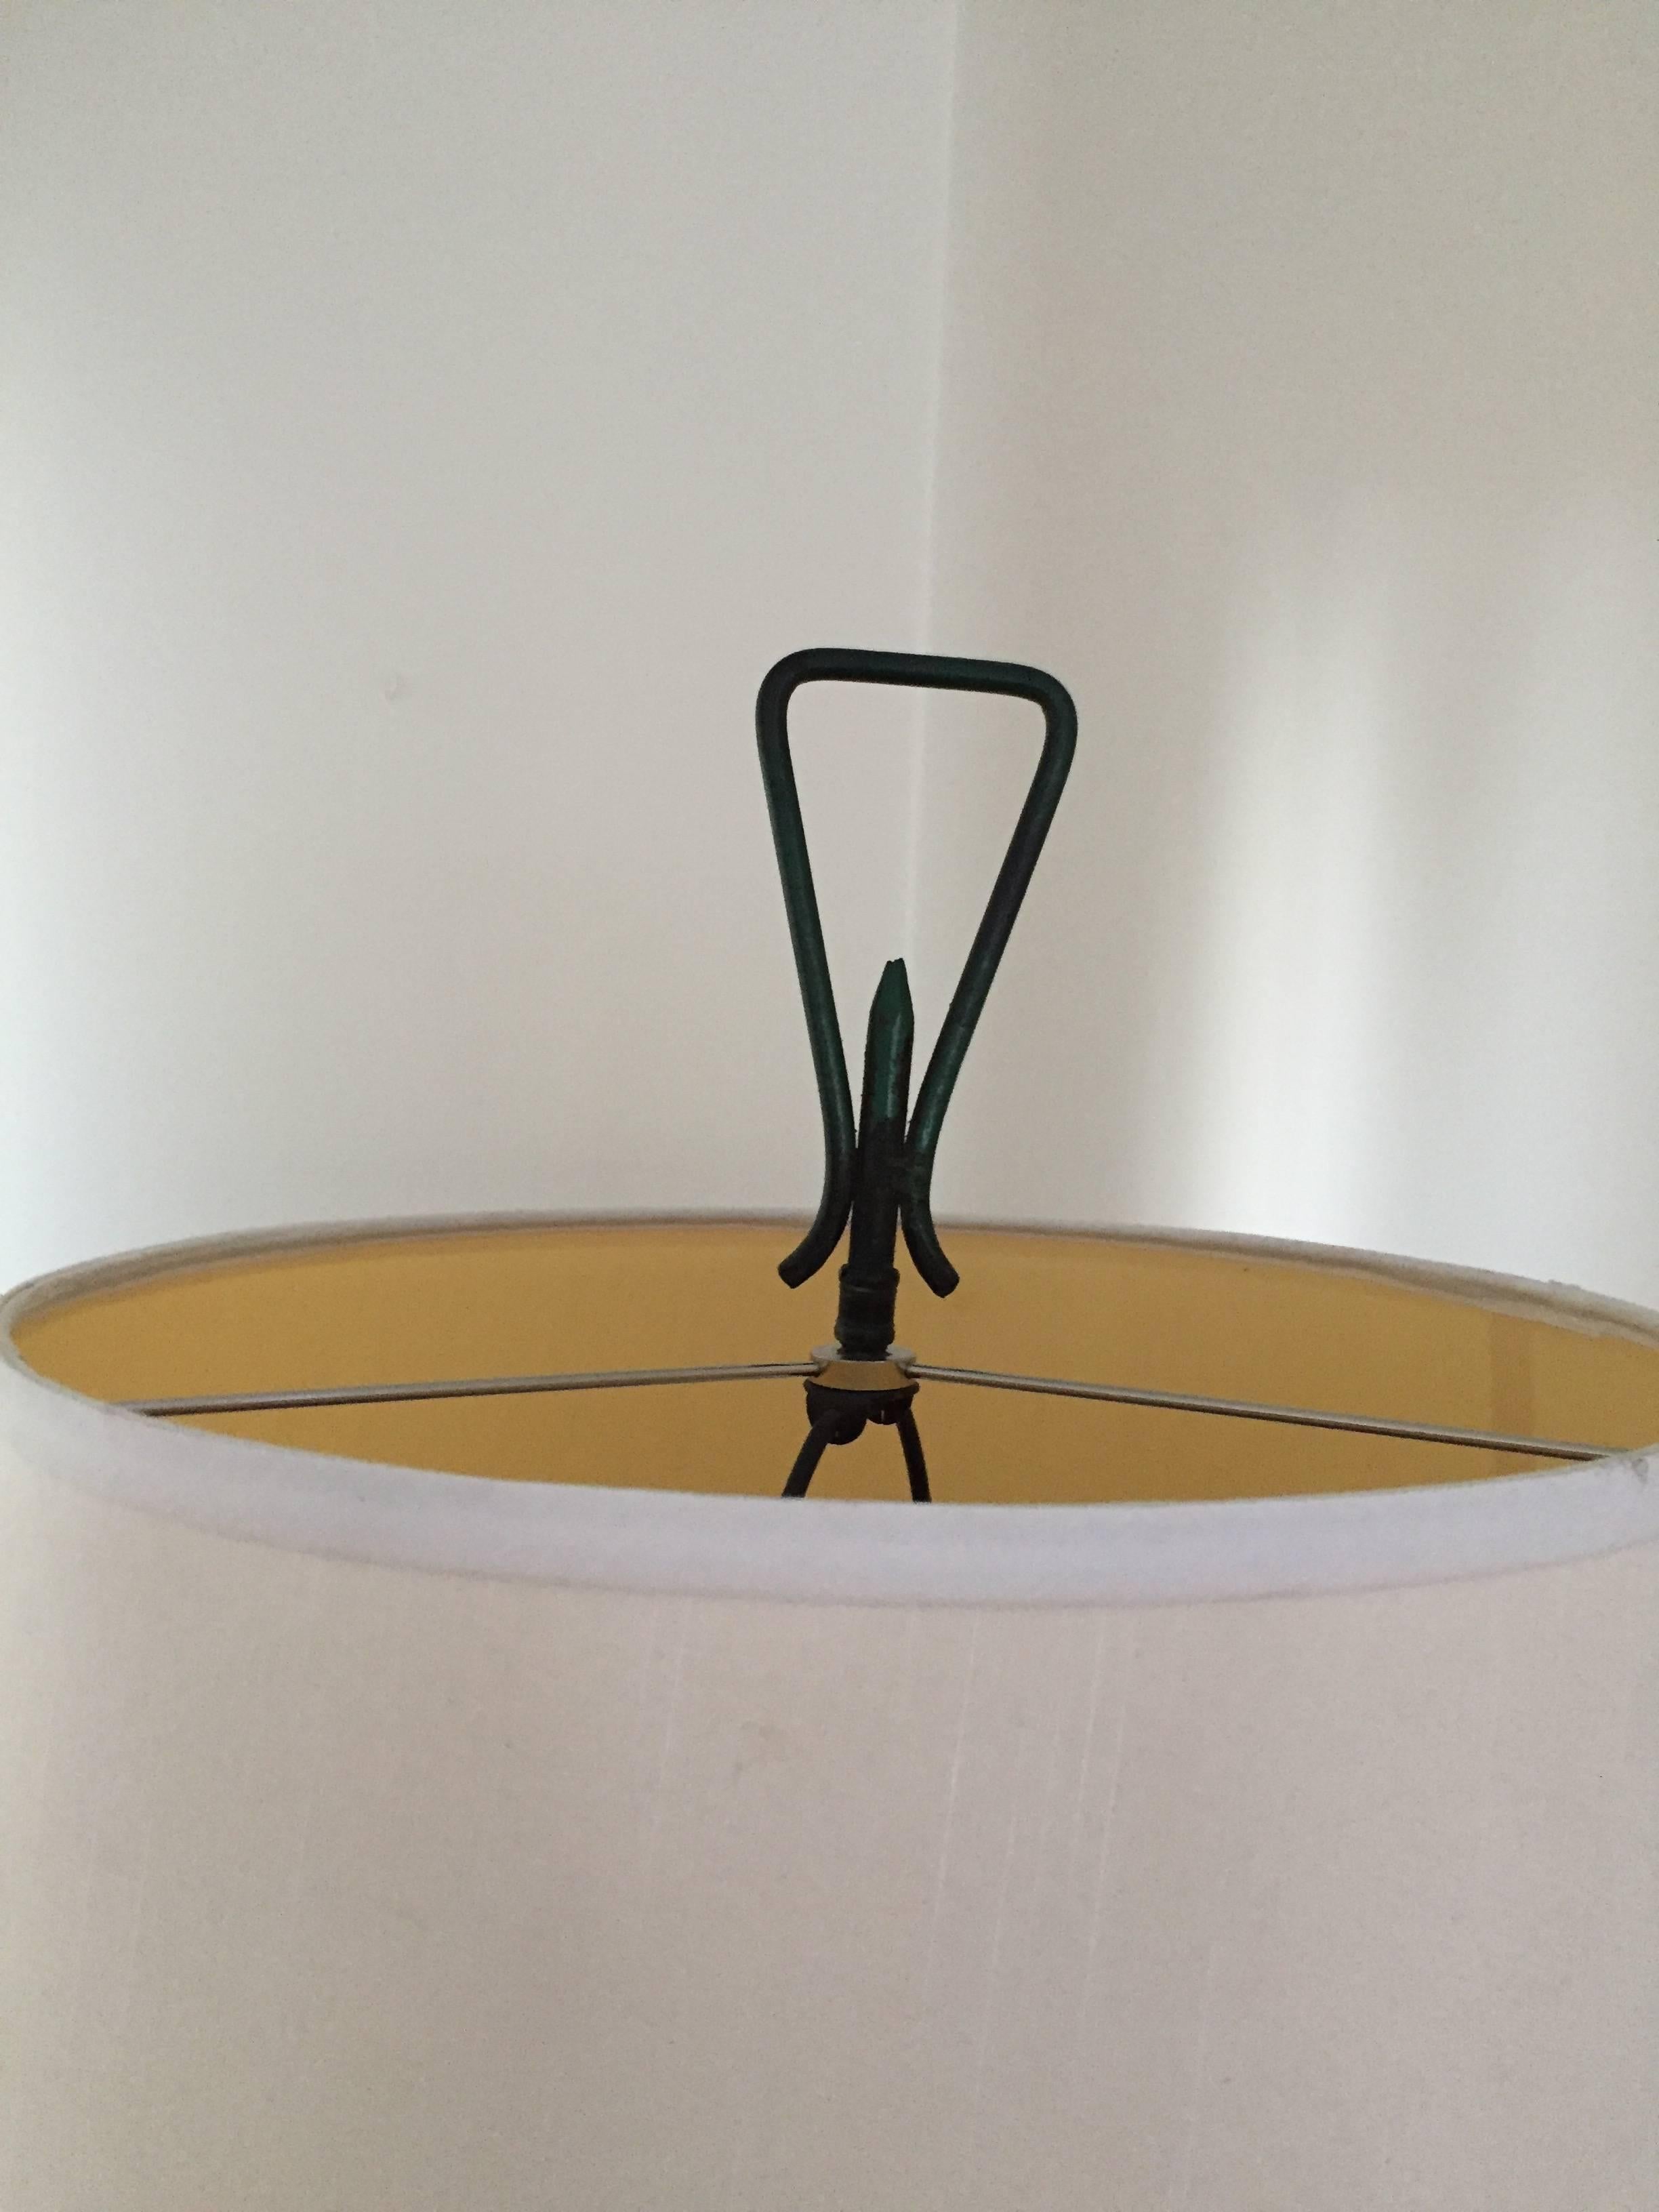 Bent tube metal hairpin base with verdigris finish and decorative pierced metal lantern basket element.  Single socket. Original finial. 